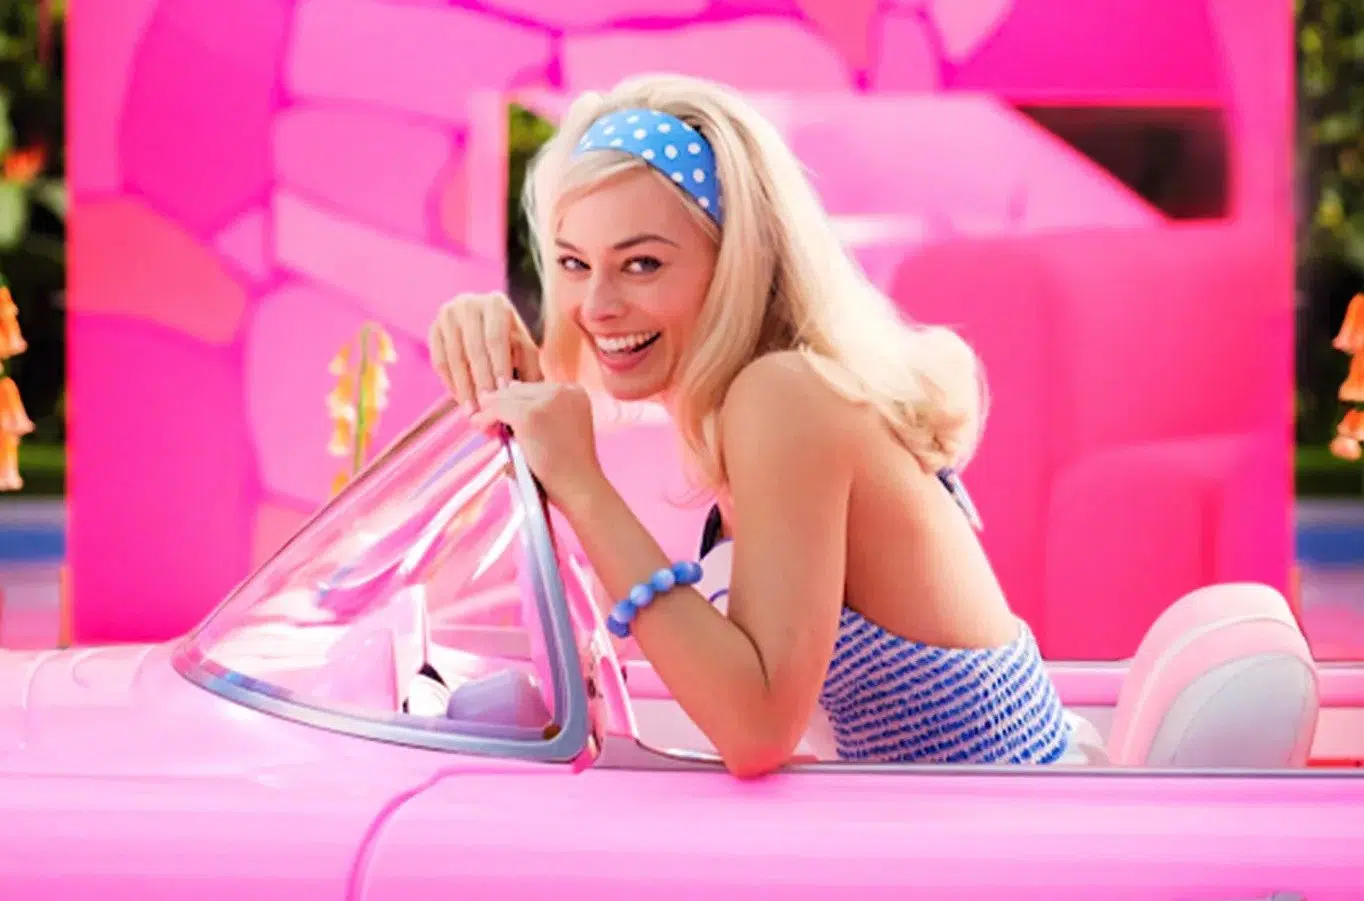 Imagens de filme da Barbie viralizam e levantam questão: será que